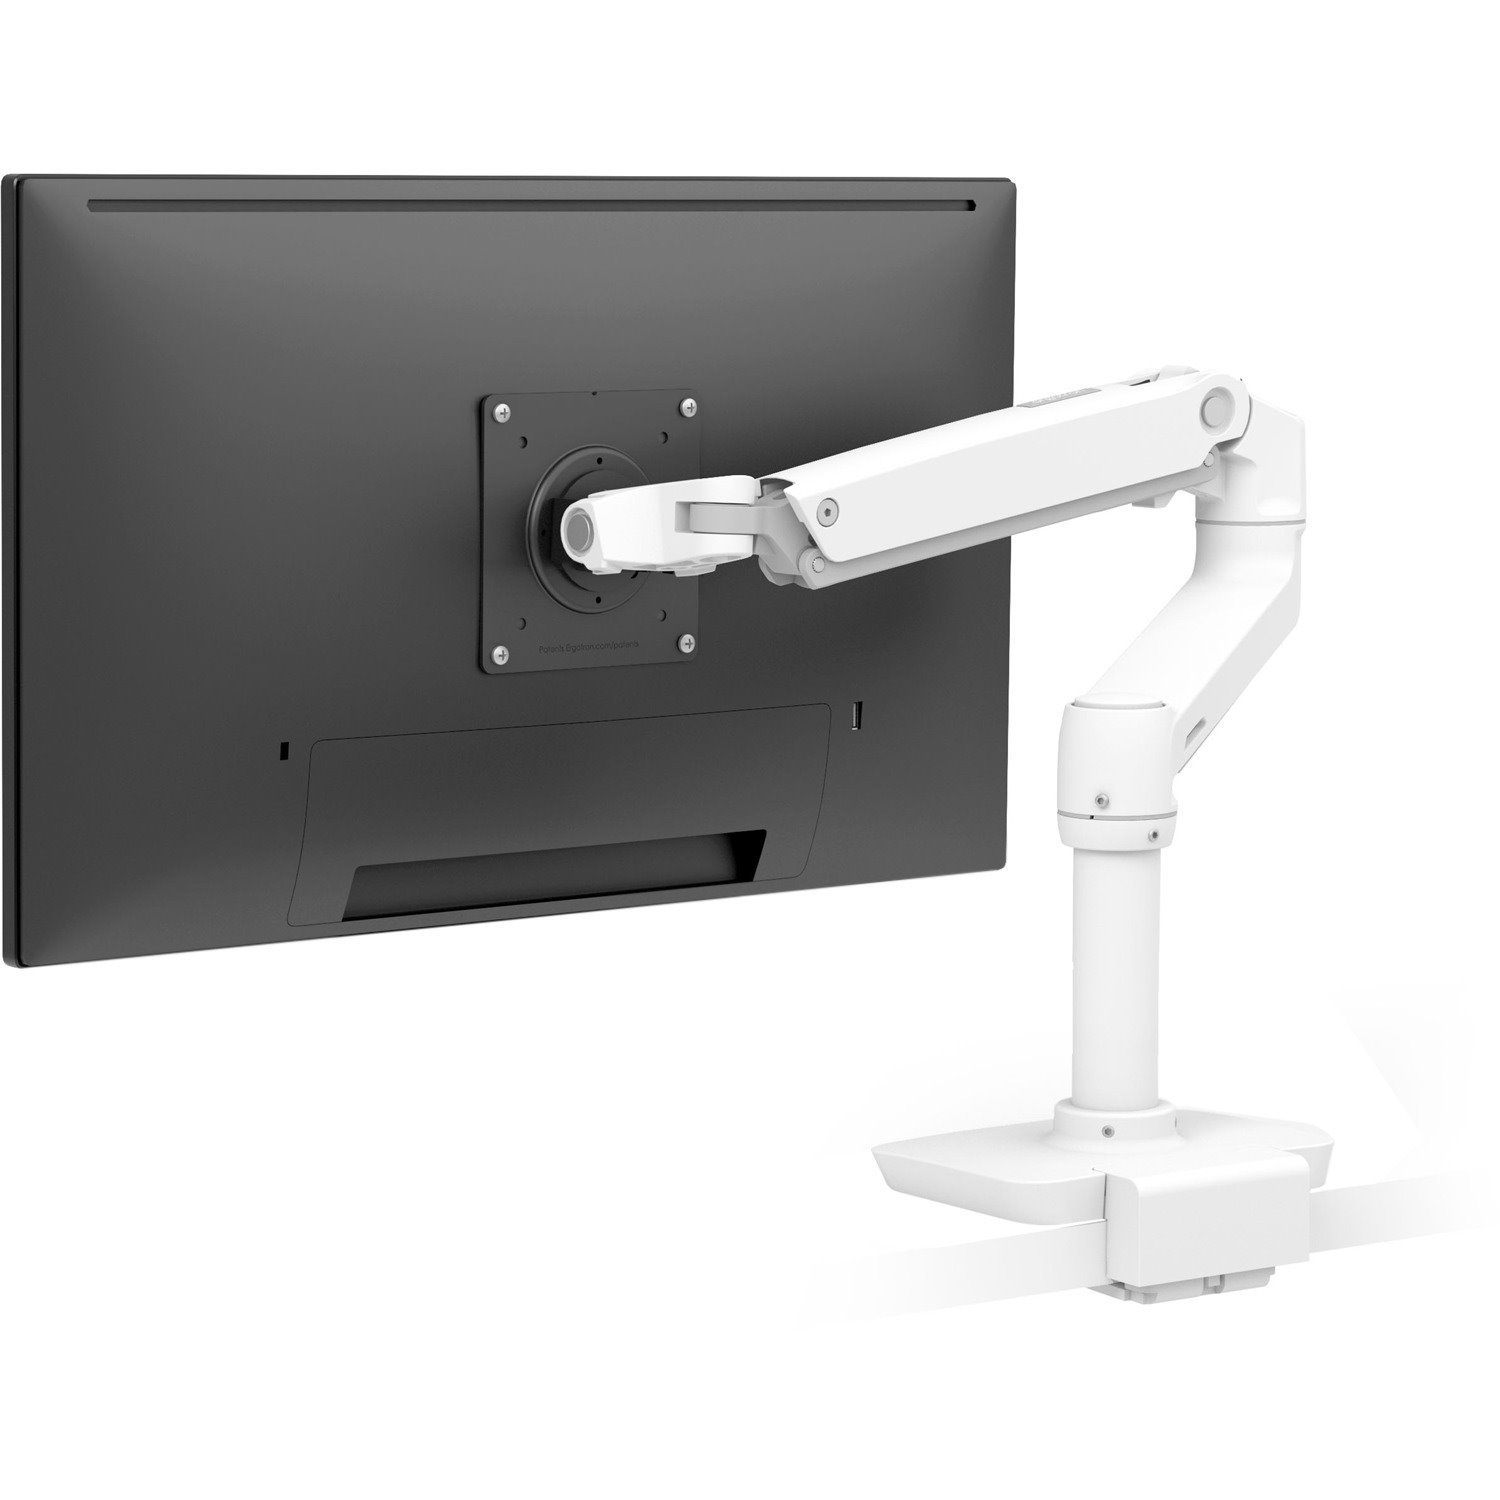 Ergotron Desk Mount for LCD Monitor - White